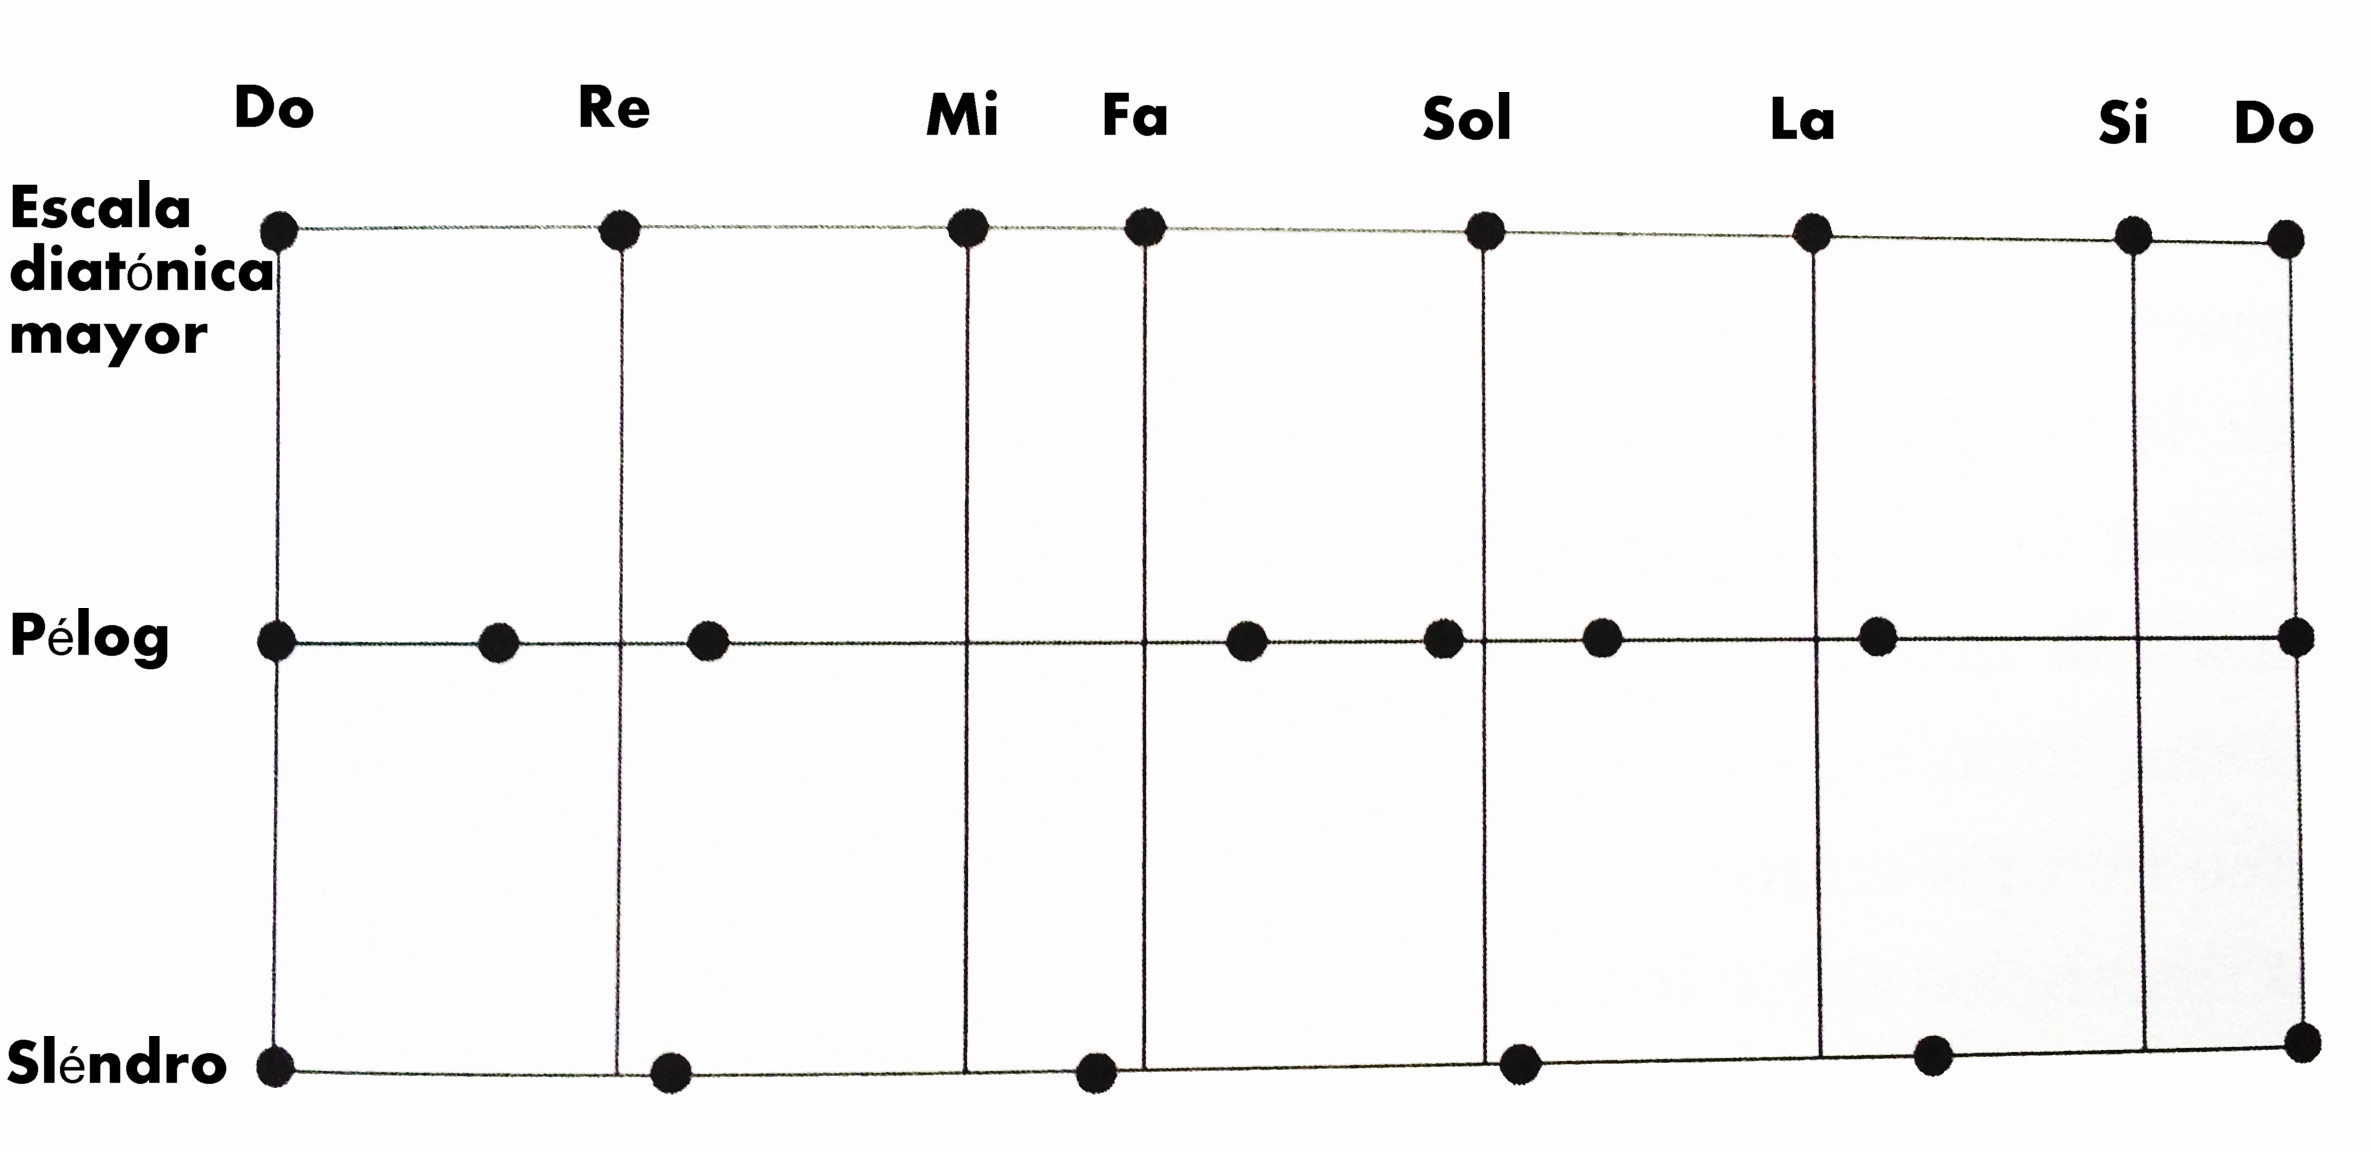 Figura 3: Distribución de las notas de las escalas javanesas "Pélog" y "Slendro", comparadas con la escala diatónica mayor